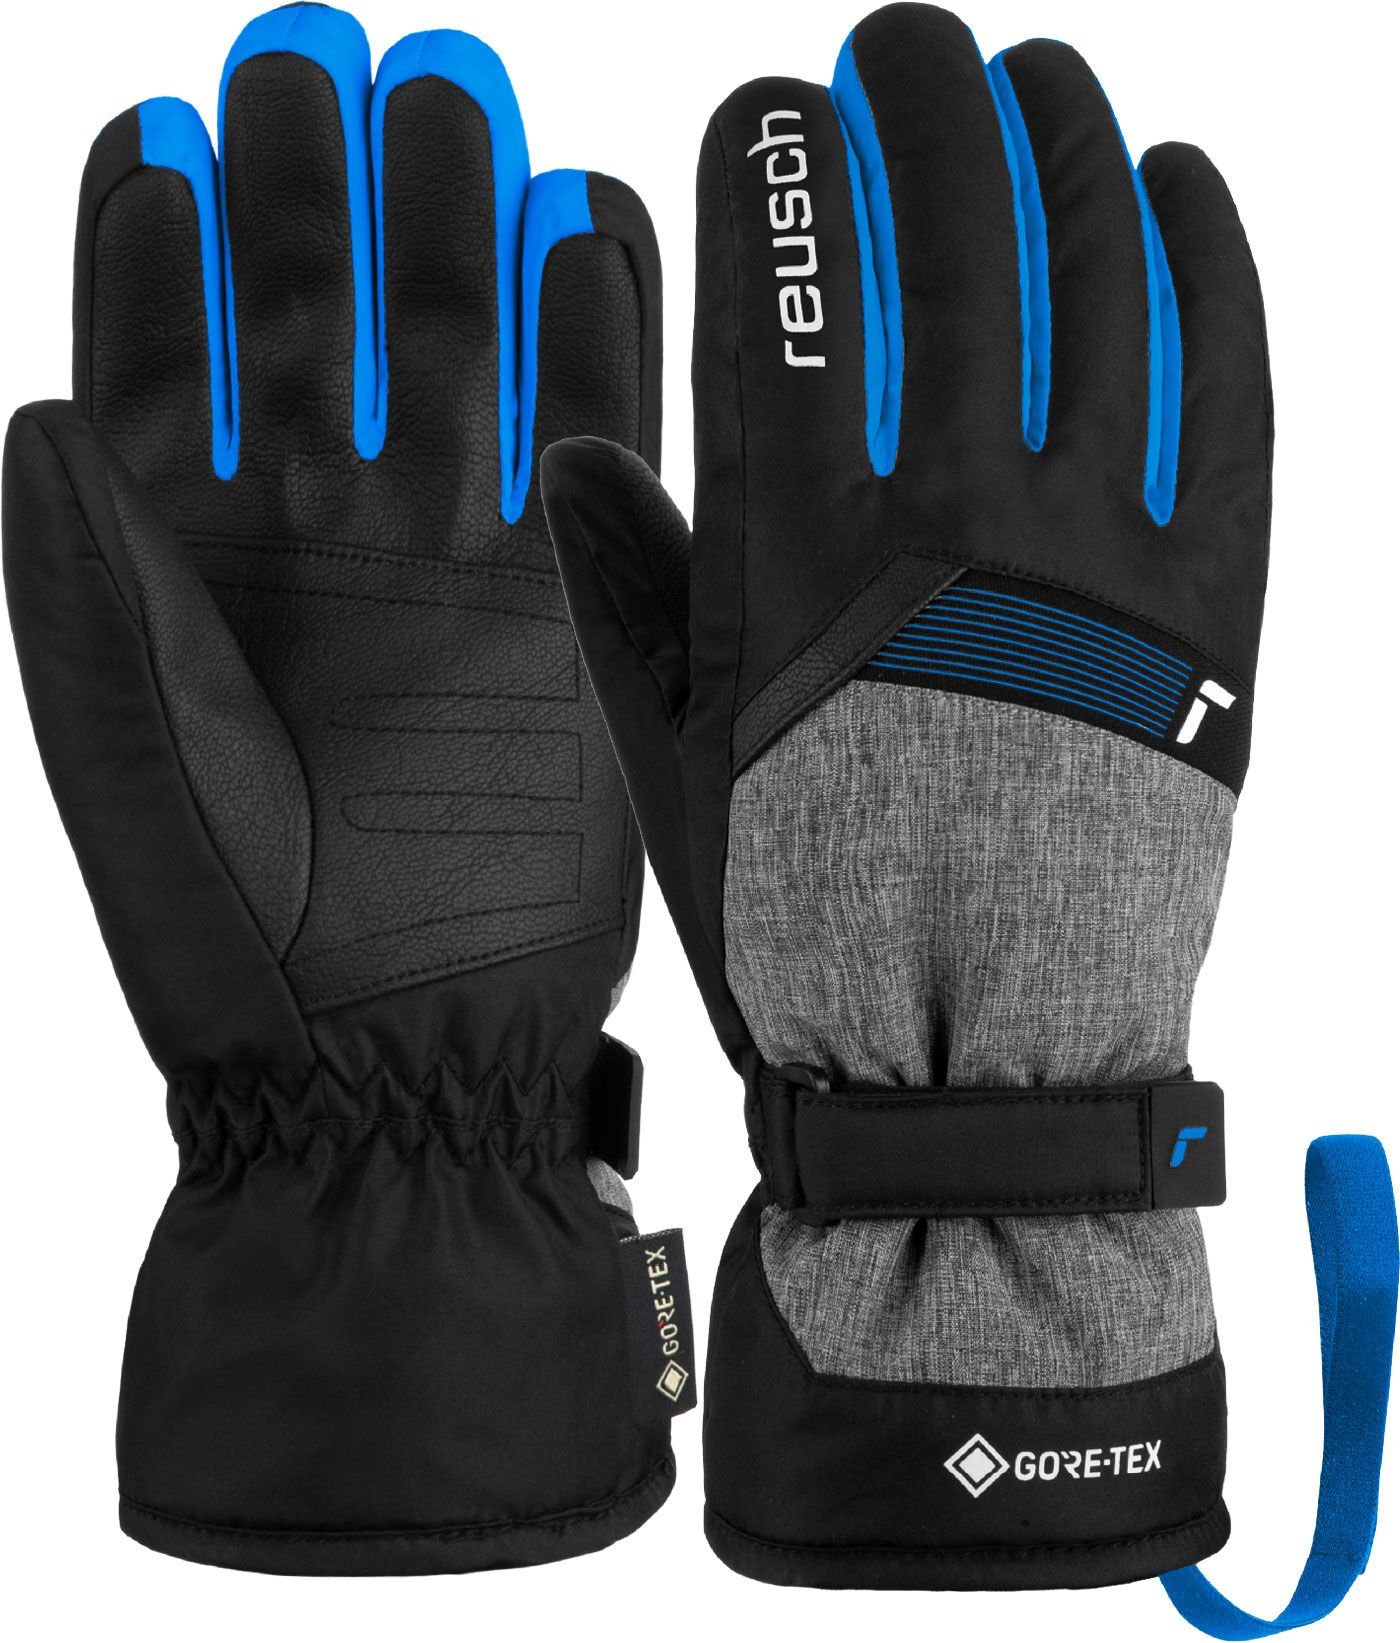 Reusch Flash GTX Ski Gloves Kids 3